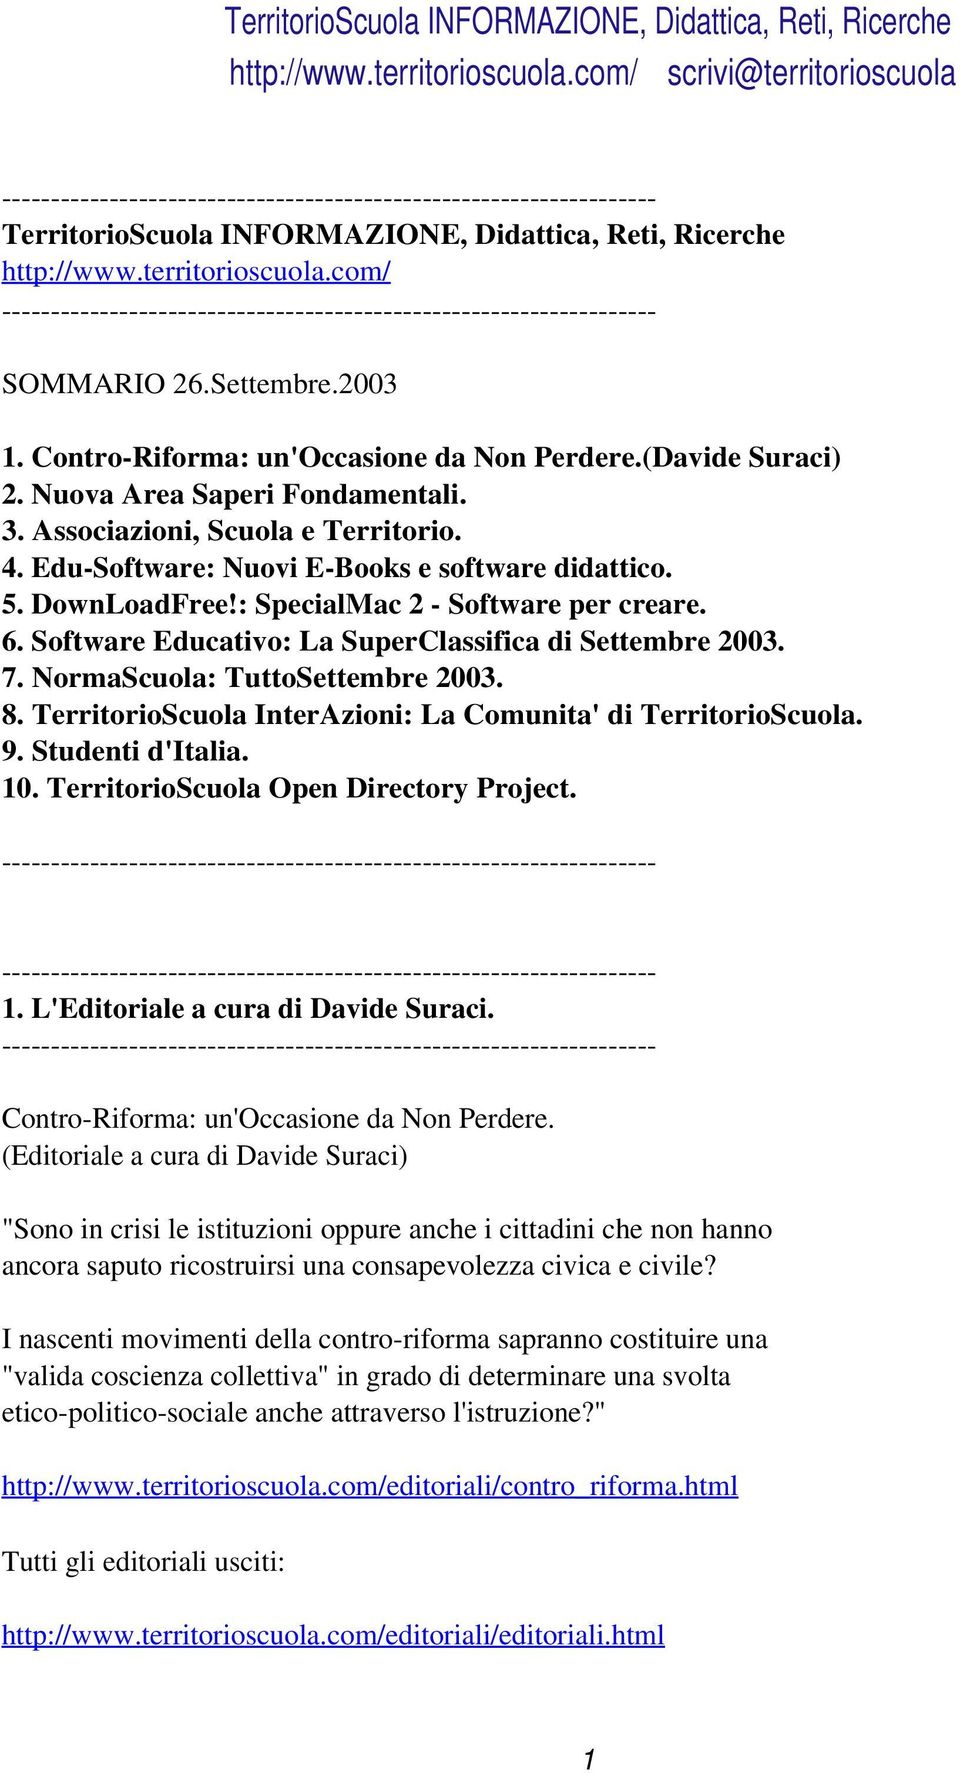 Software Educativo: La SuperClassifica di Settembre 2003. 7. NormaScuola: TuttoSettembre 2003. 8. TerritorioScuola InterAzioni: La Comunita' di TerritorioScuola. 9. Studenti d'italia. 10.